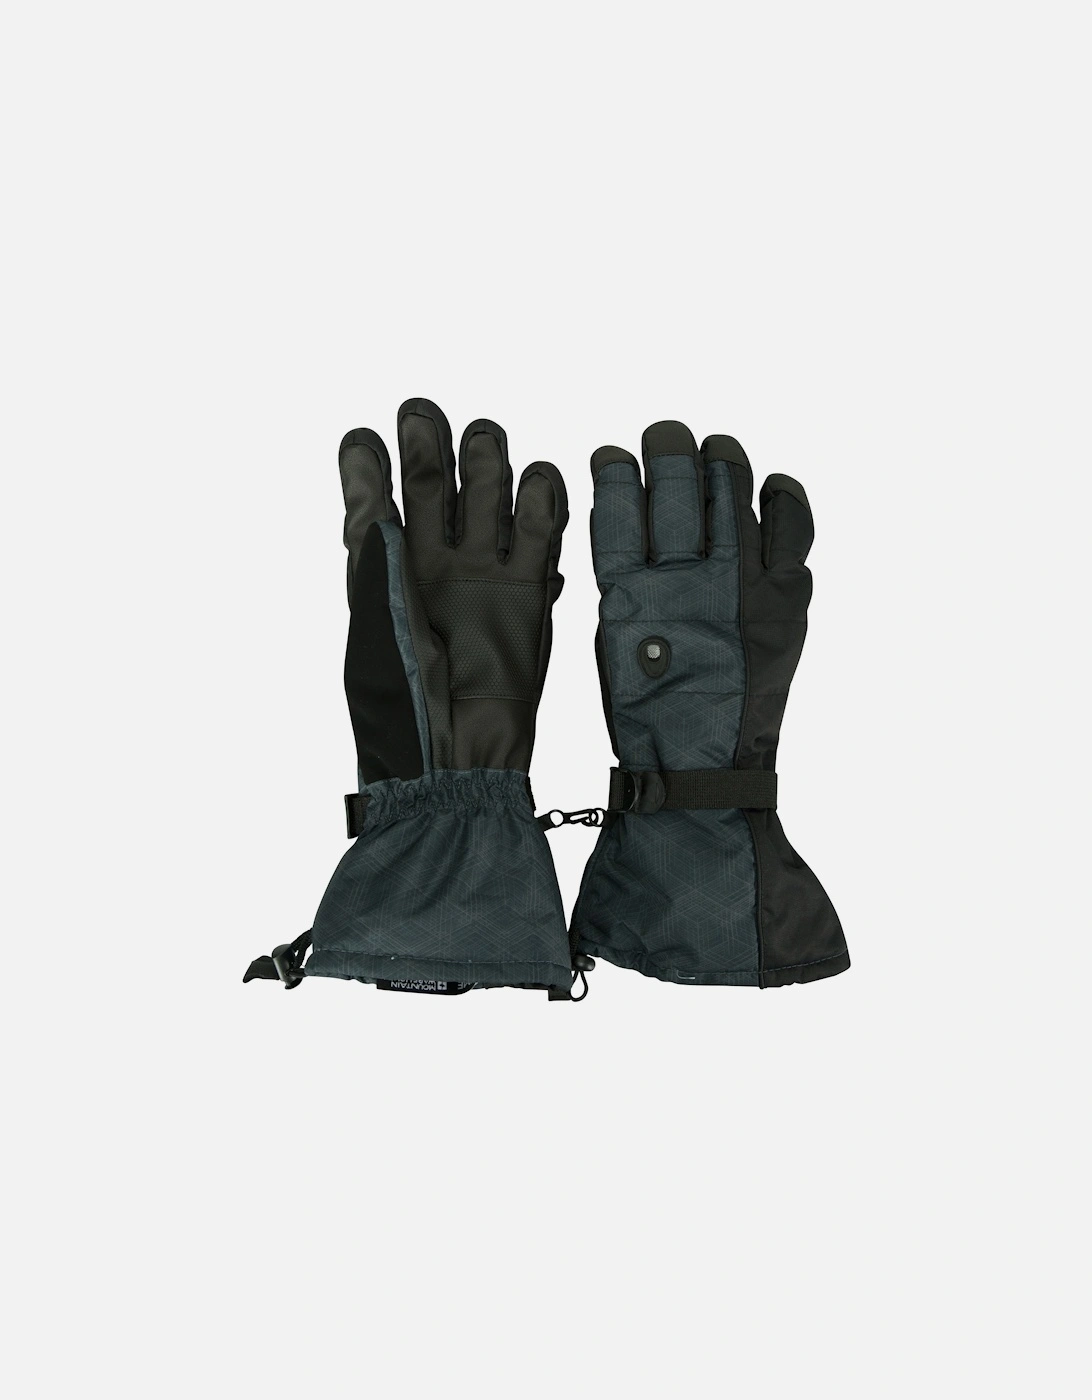 Mens Mountain Ski Gloves